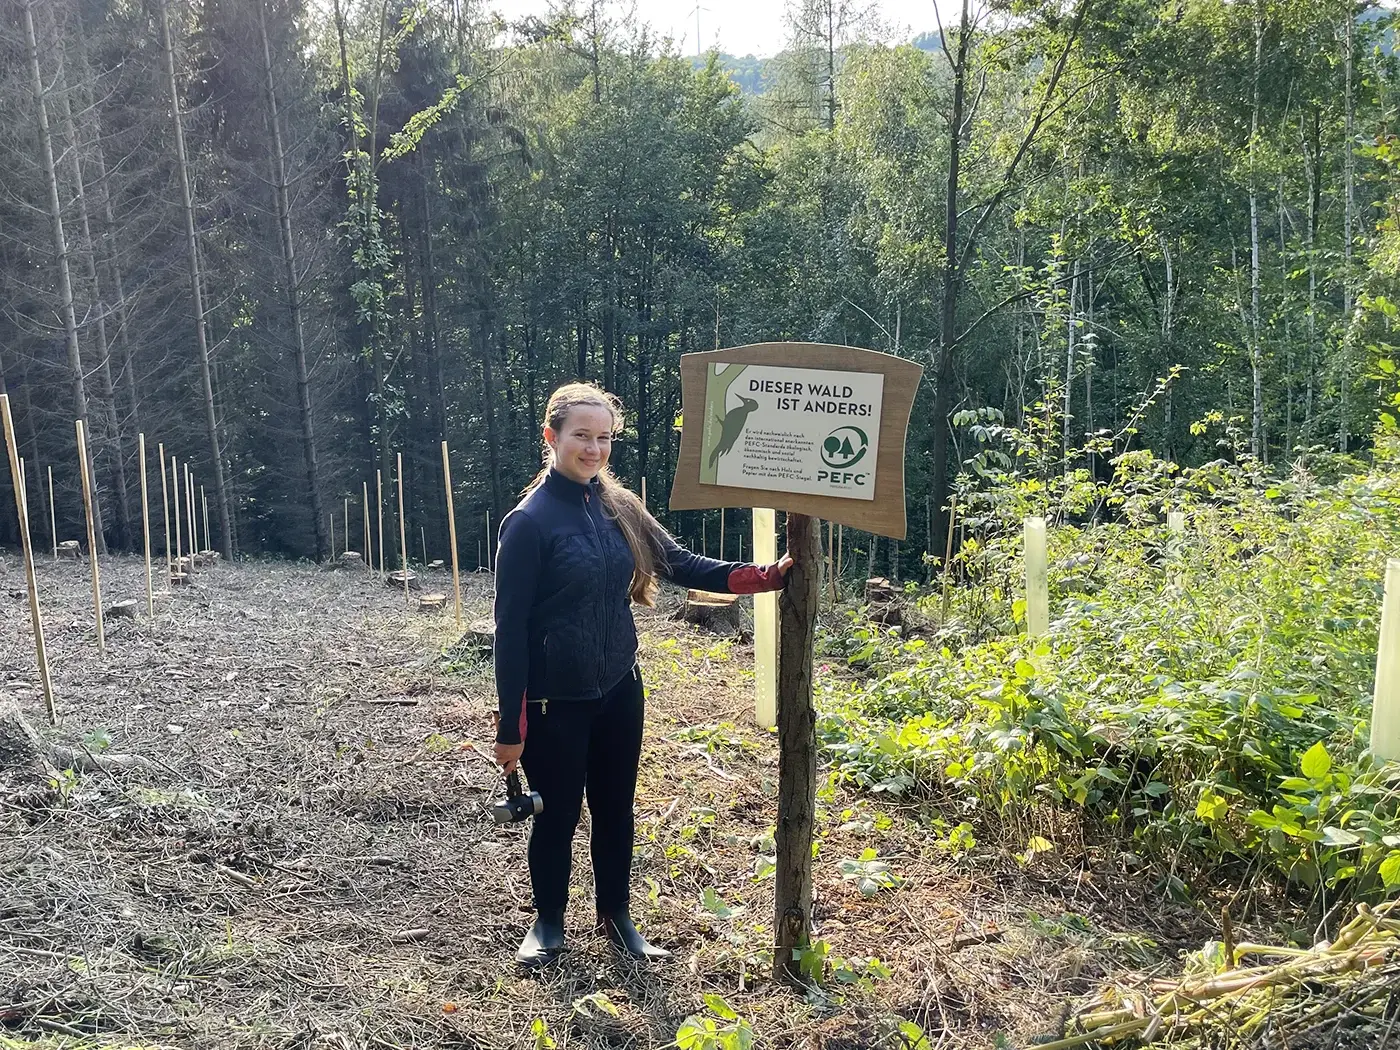 Lea befestigt ein Informatives Schild im Wald.